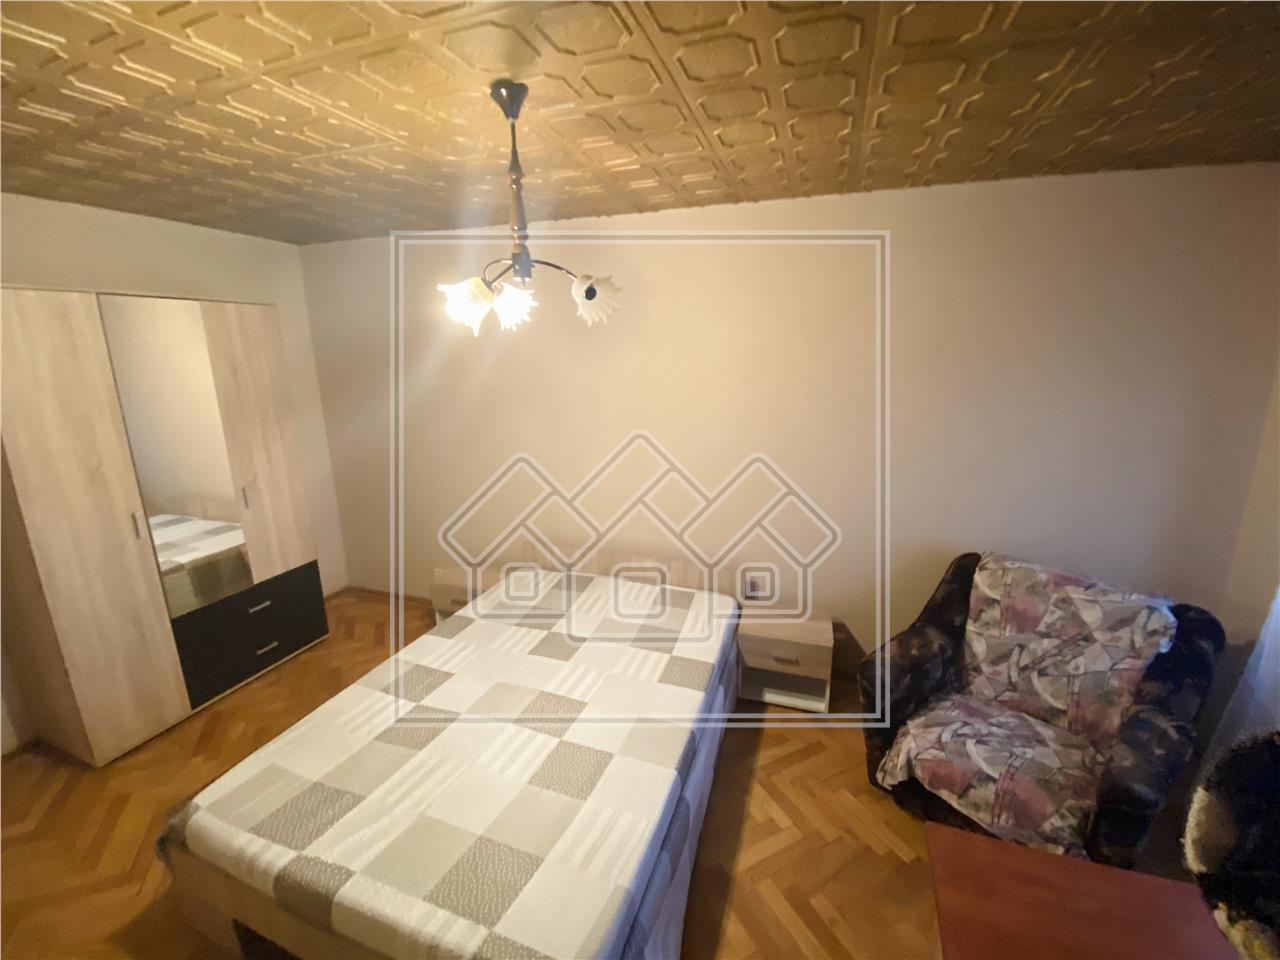 Wohnung zum Verkauf in Sibiu - freistehend - Aufzug - V.Aaron-Bereich